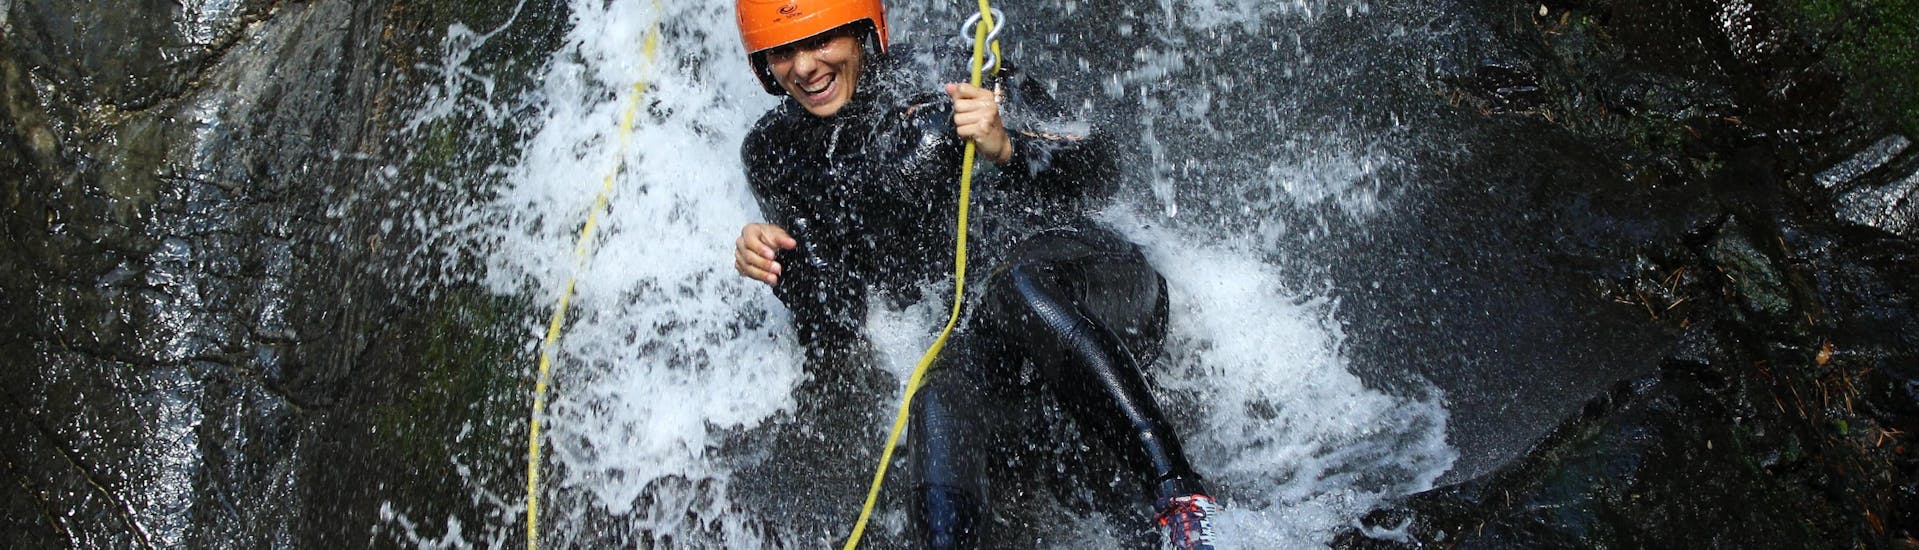 Una mujer desciende por las rocas cubiertas de agua mientras realiza su excursión de barranquismo con ROCROI.Una mujer desciende por las rocas cubiertas de agua mientras realiza su excursión de barranquismo con ROCROI.